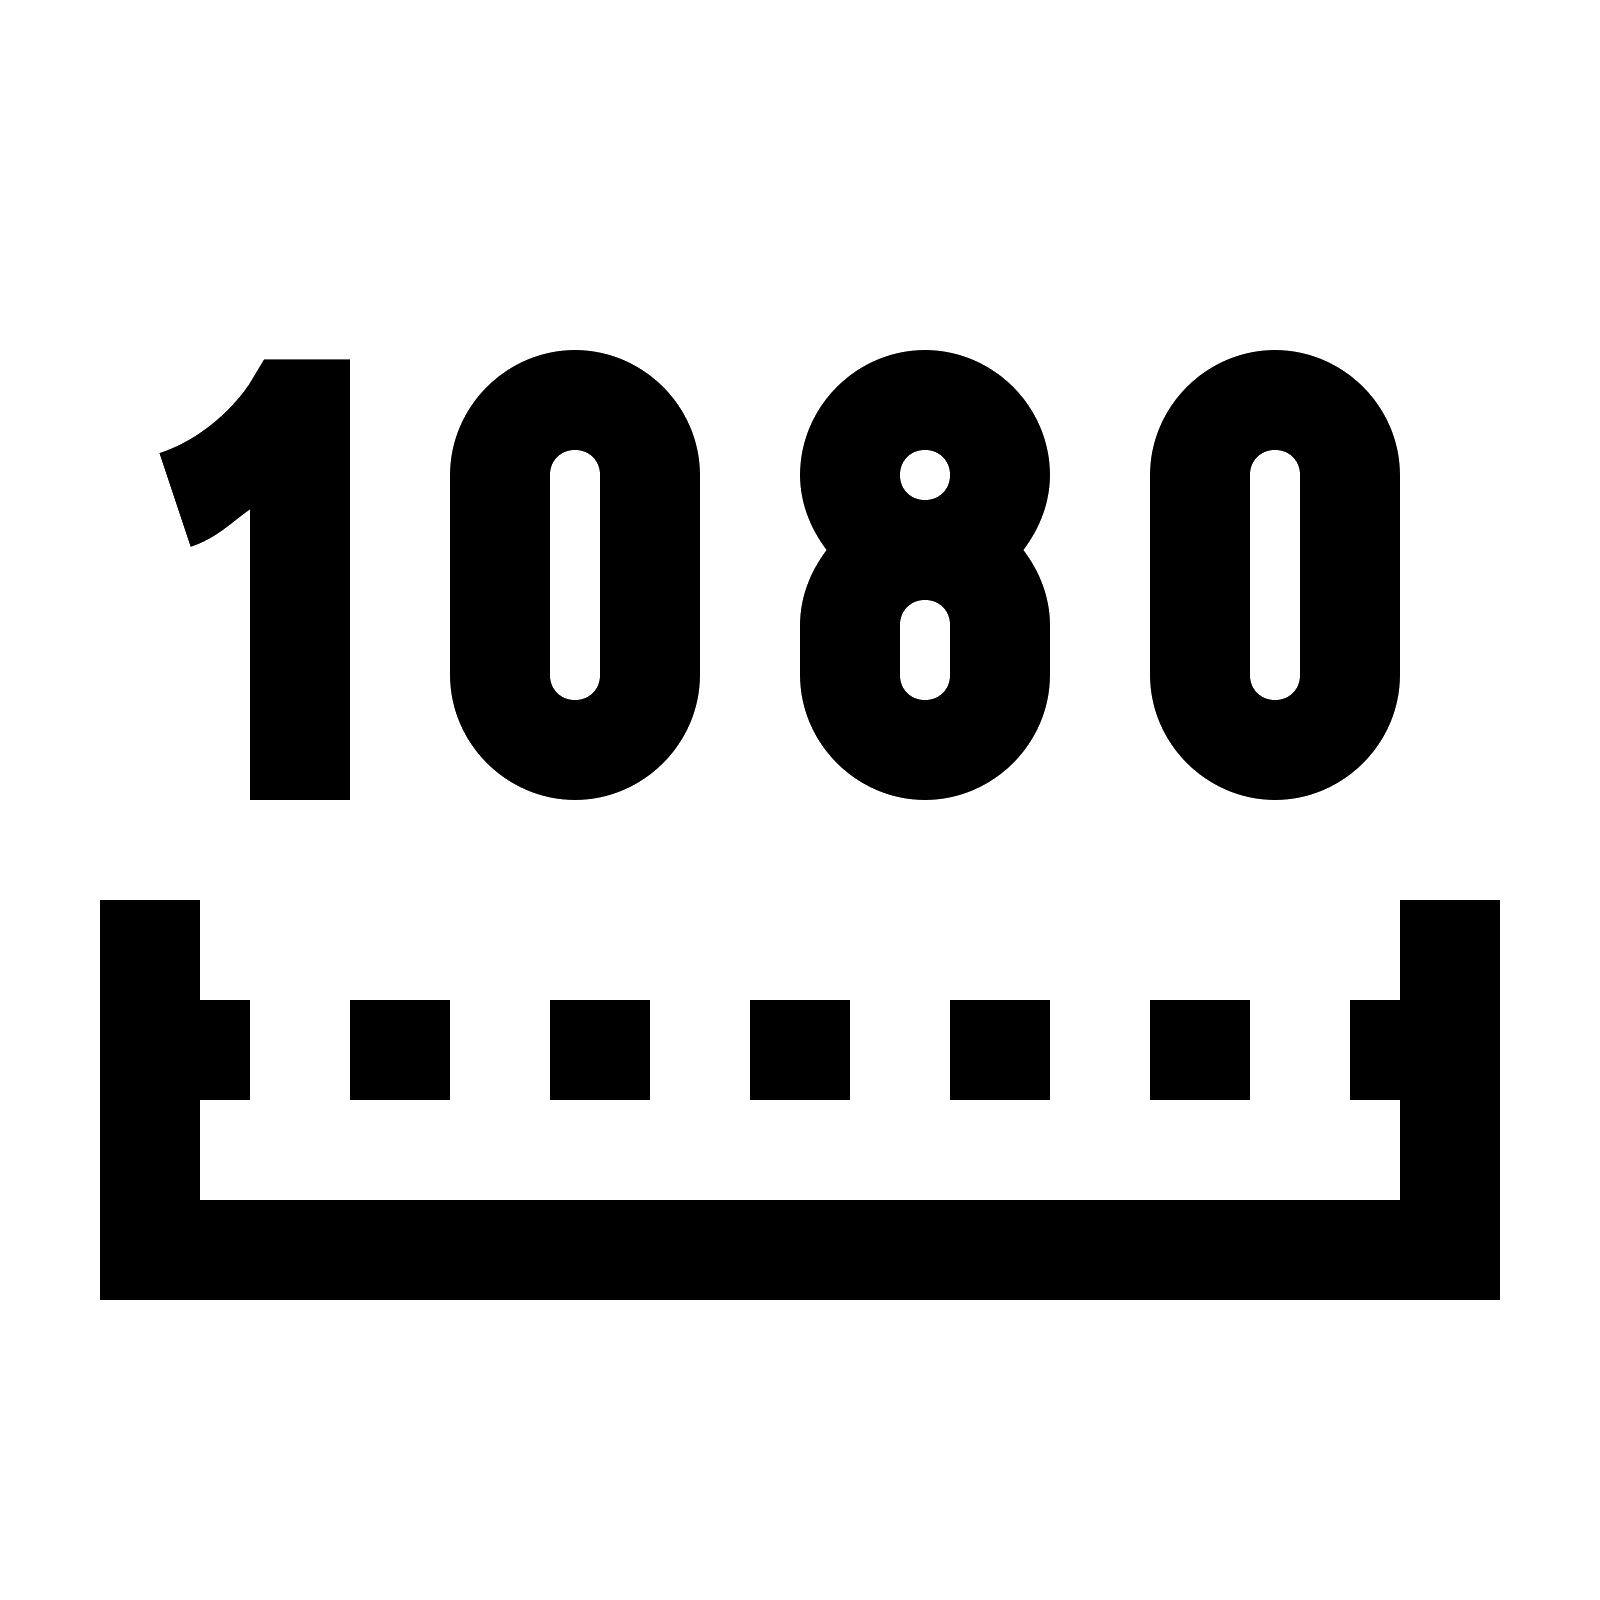 1080P Logo - 1080p logo png » PNG Image